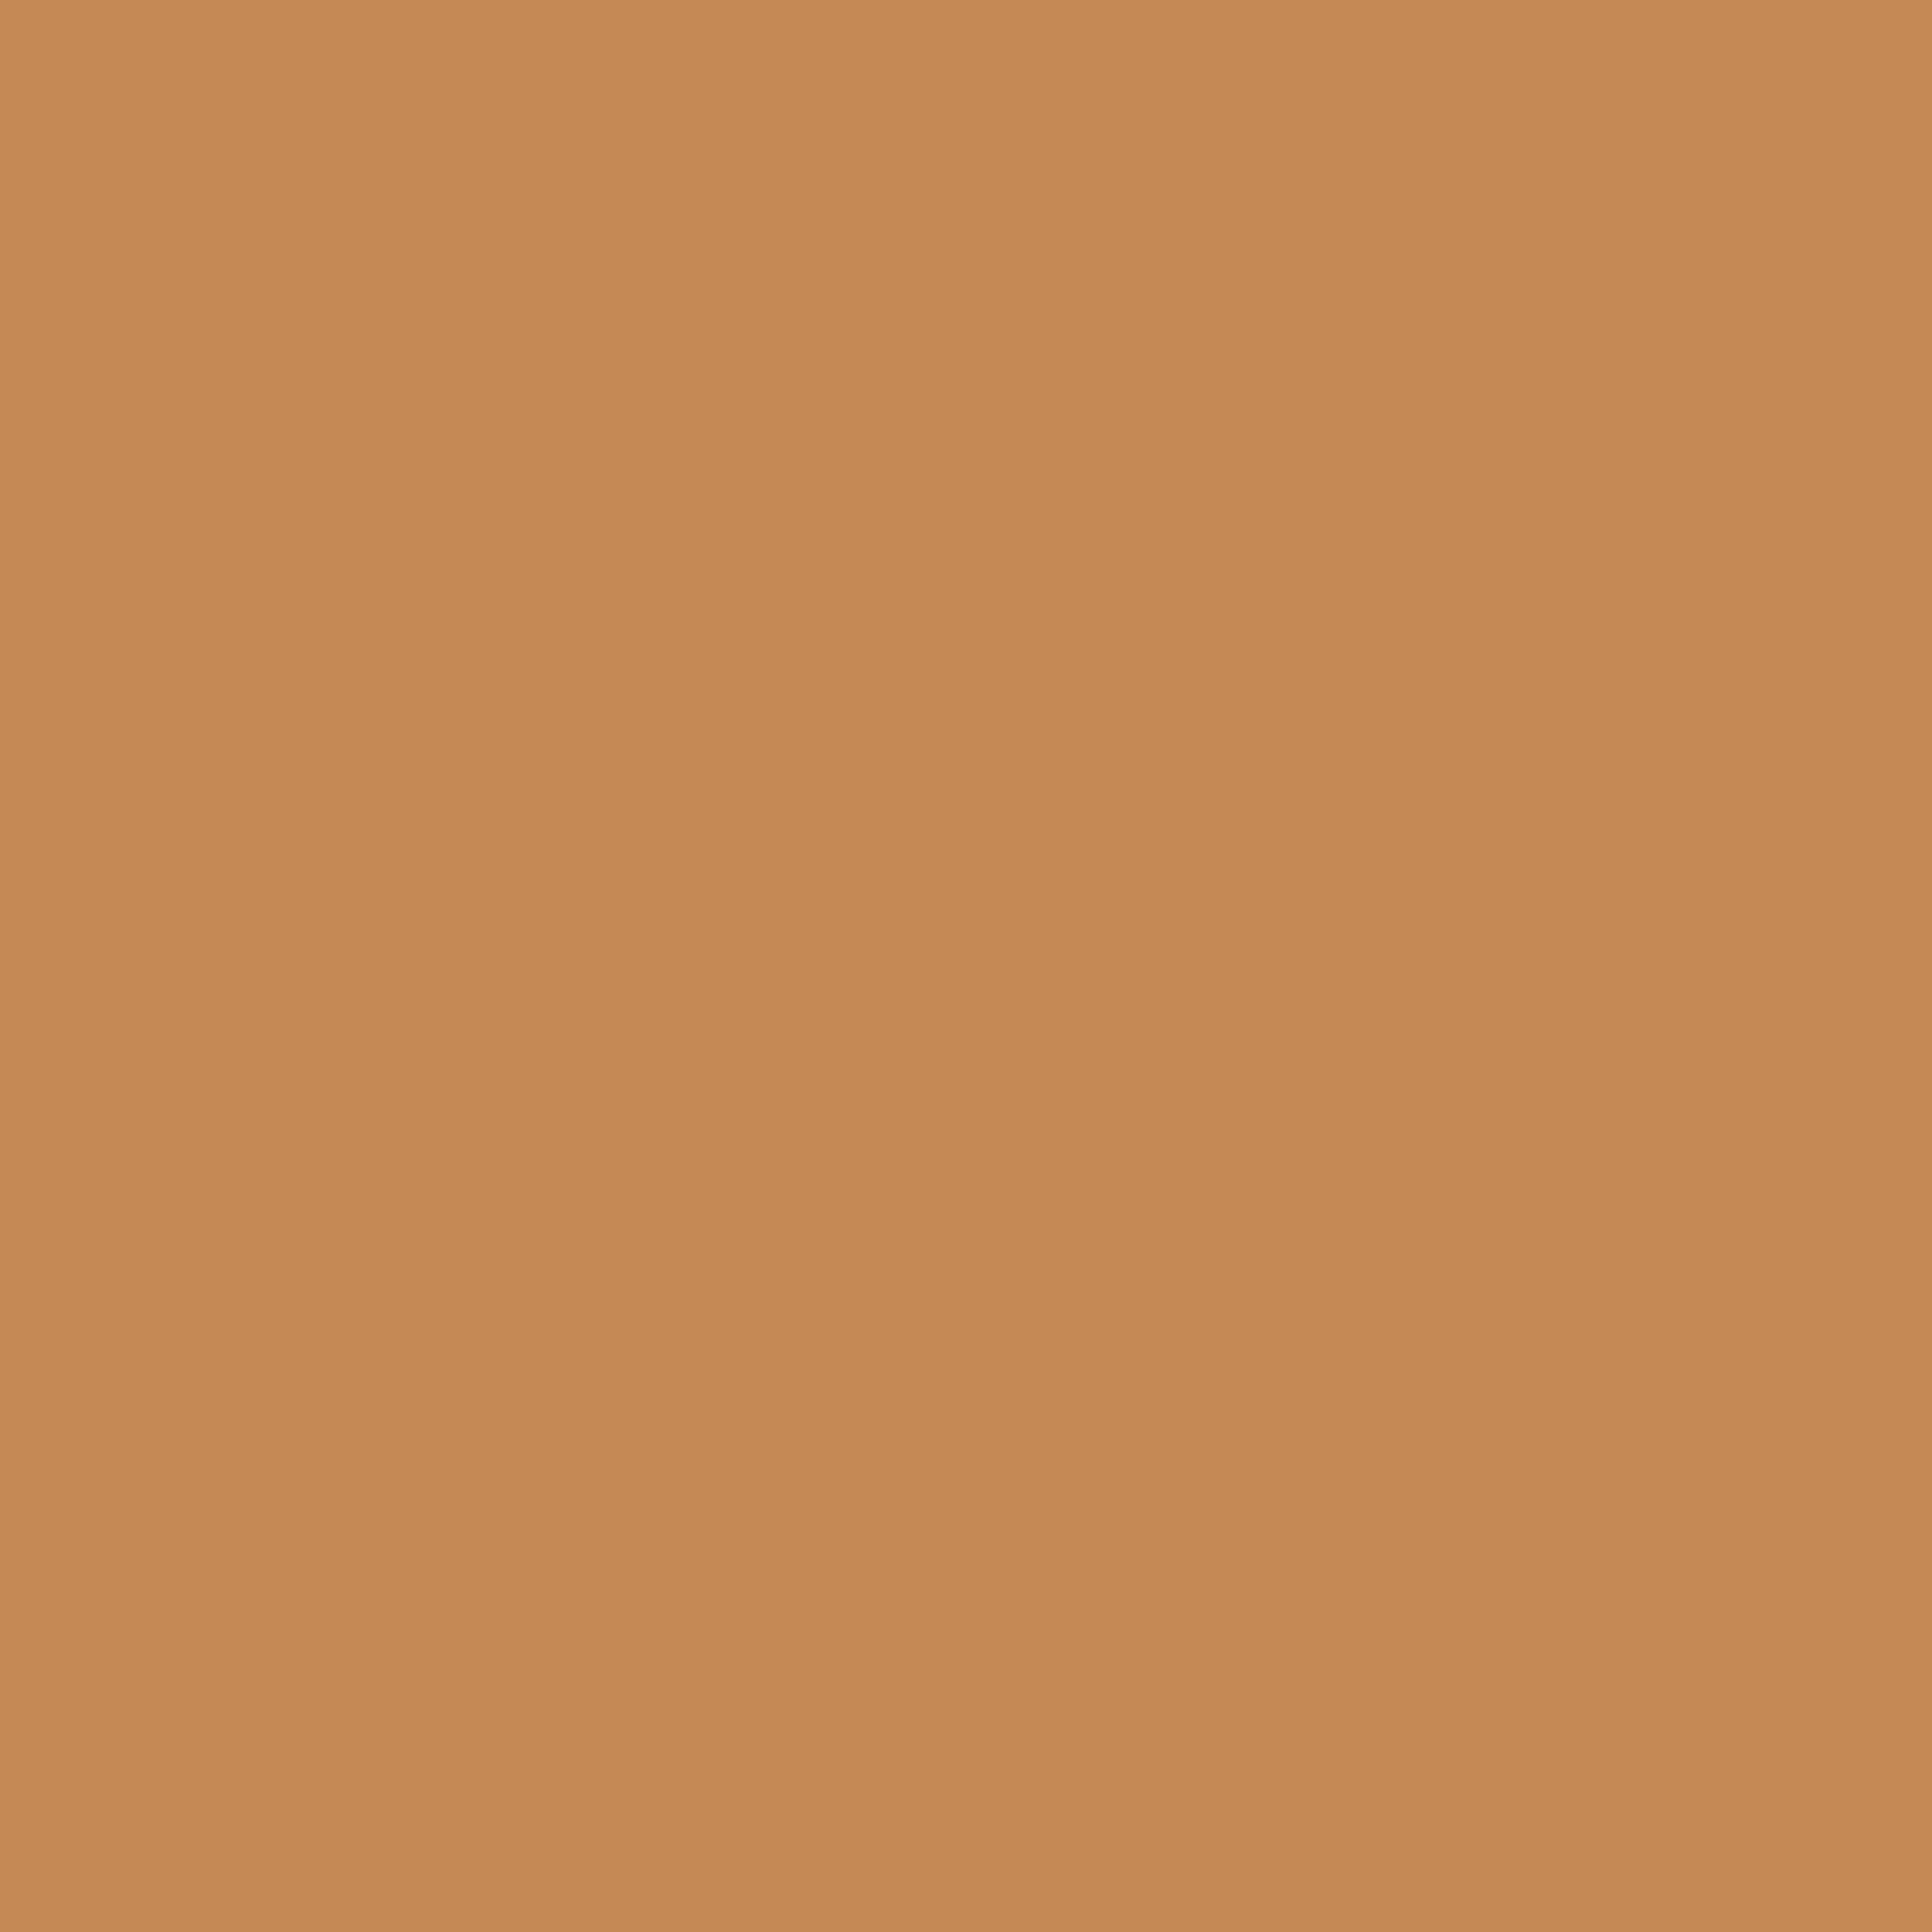 Rubber Brown Color Icon